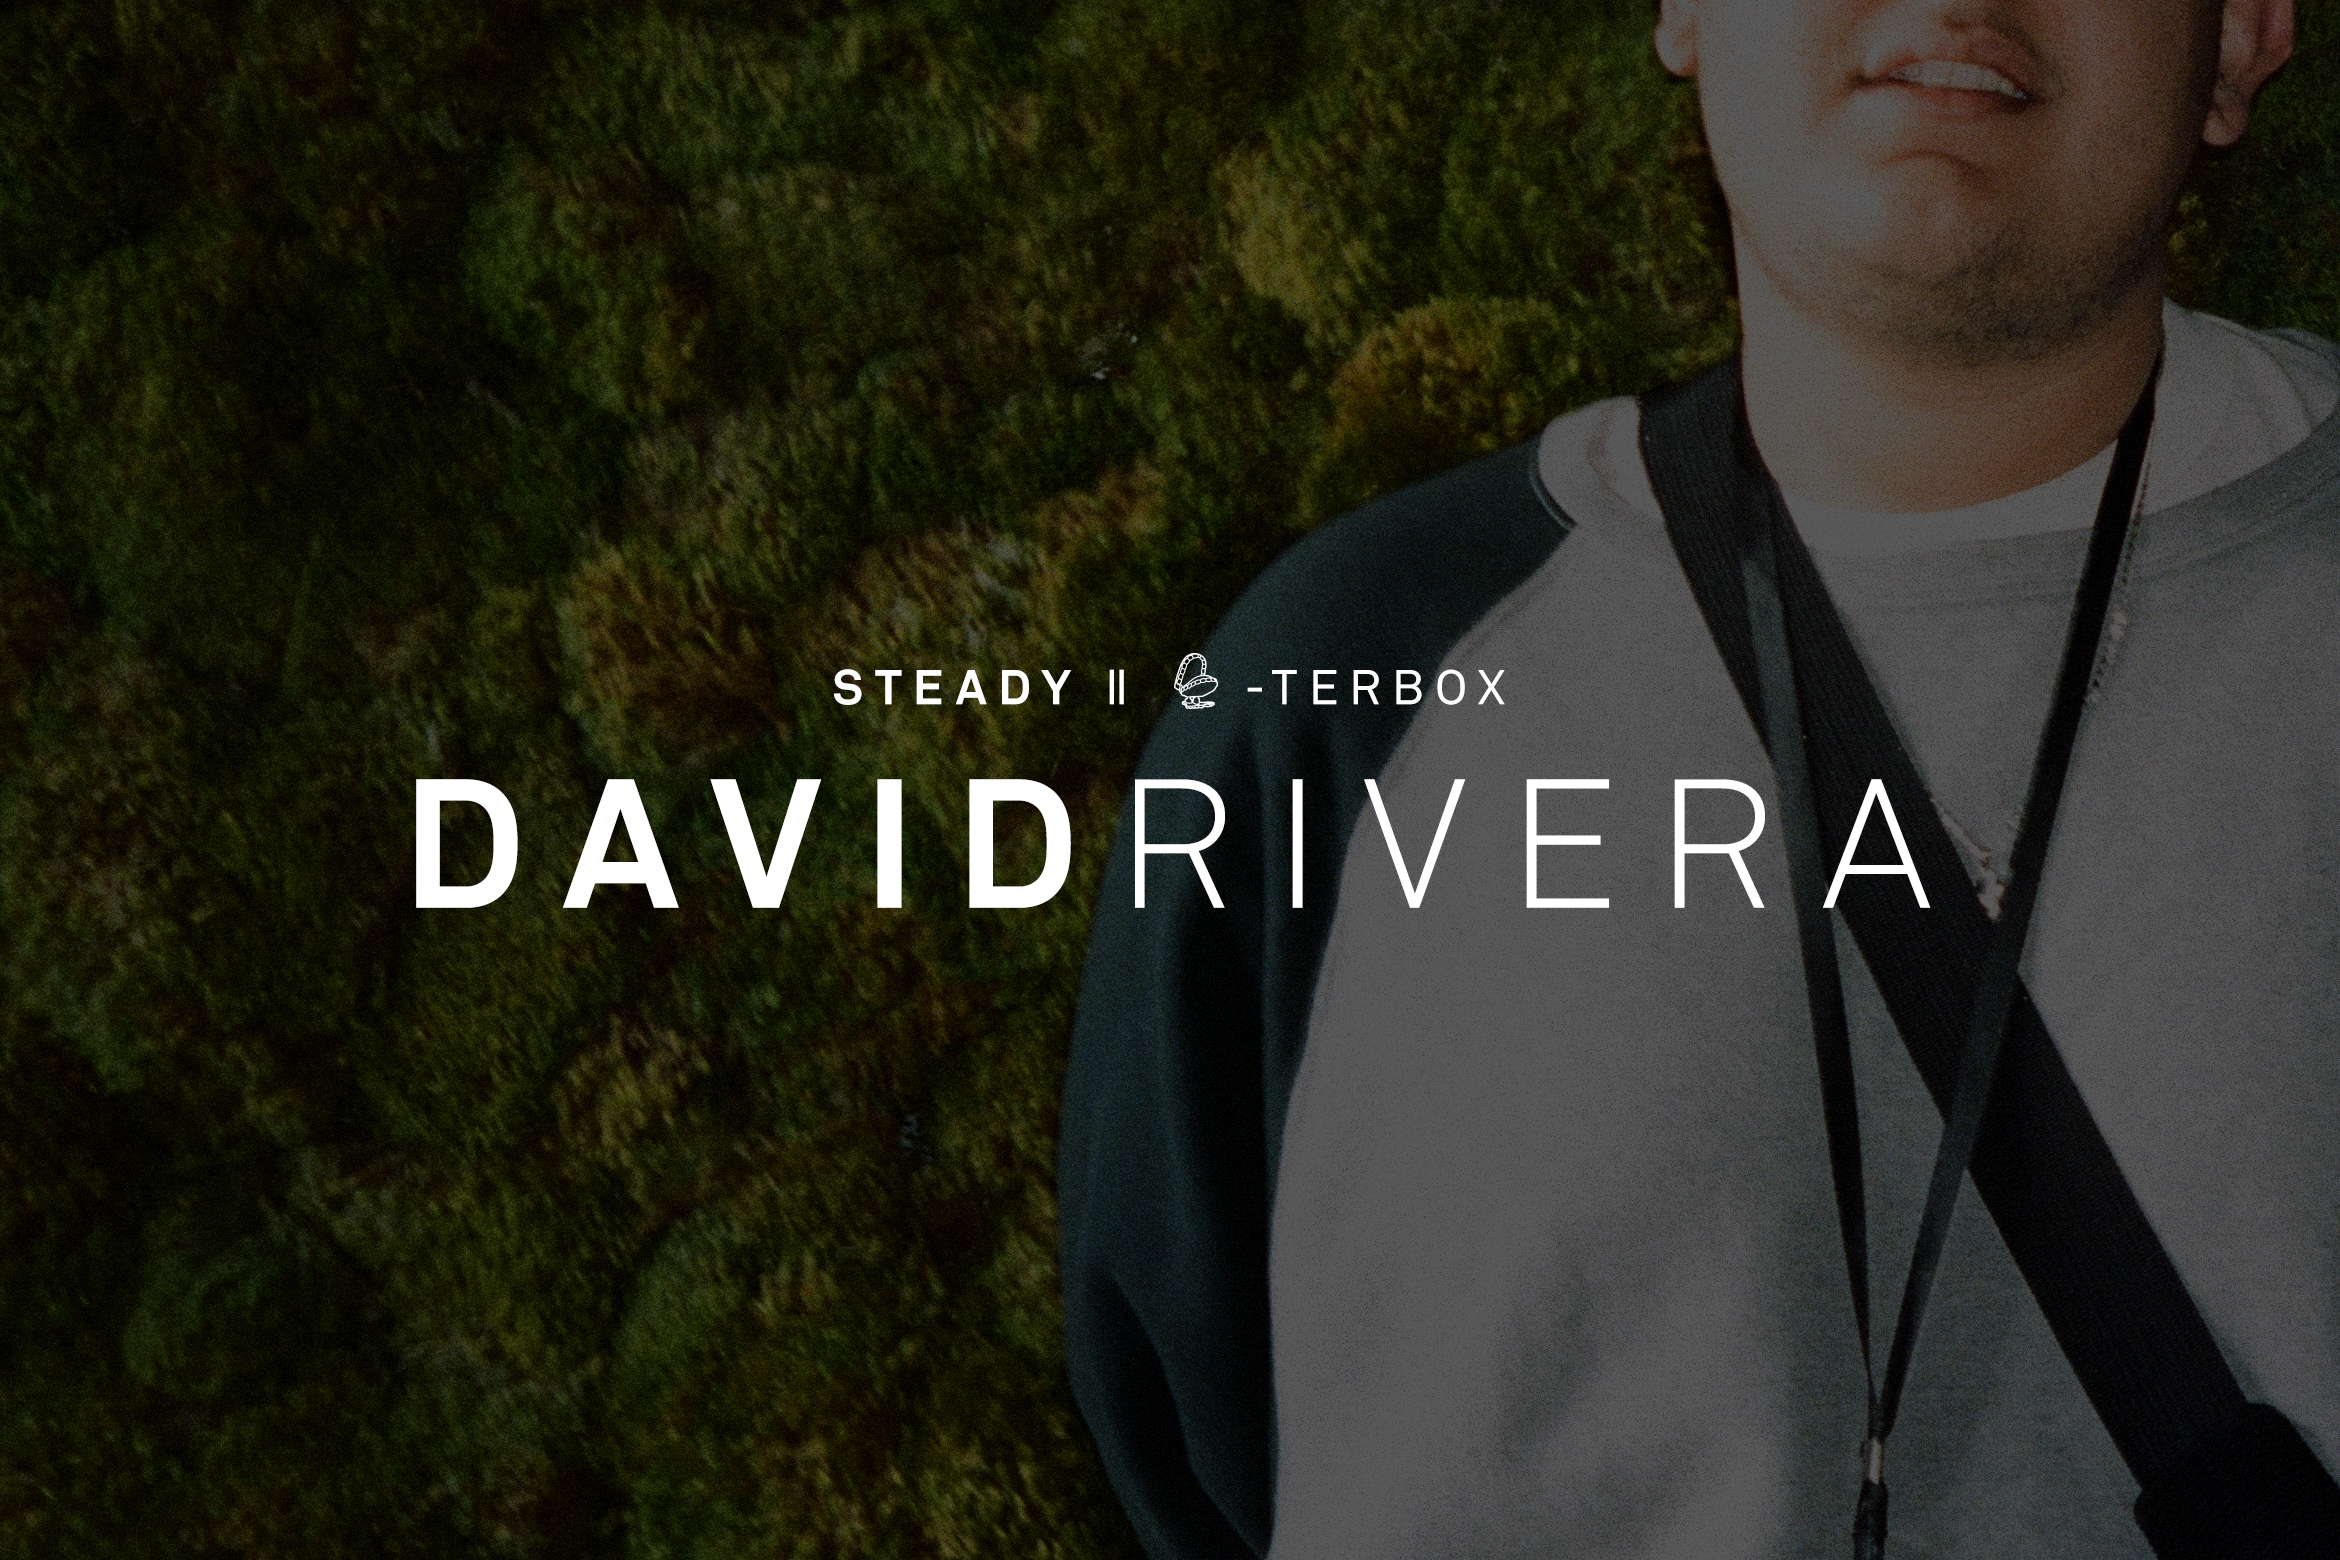 STEADY CHATTERBOX: DAVID RIVERA